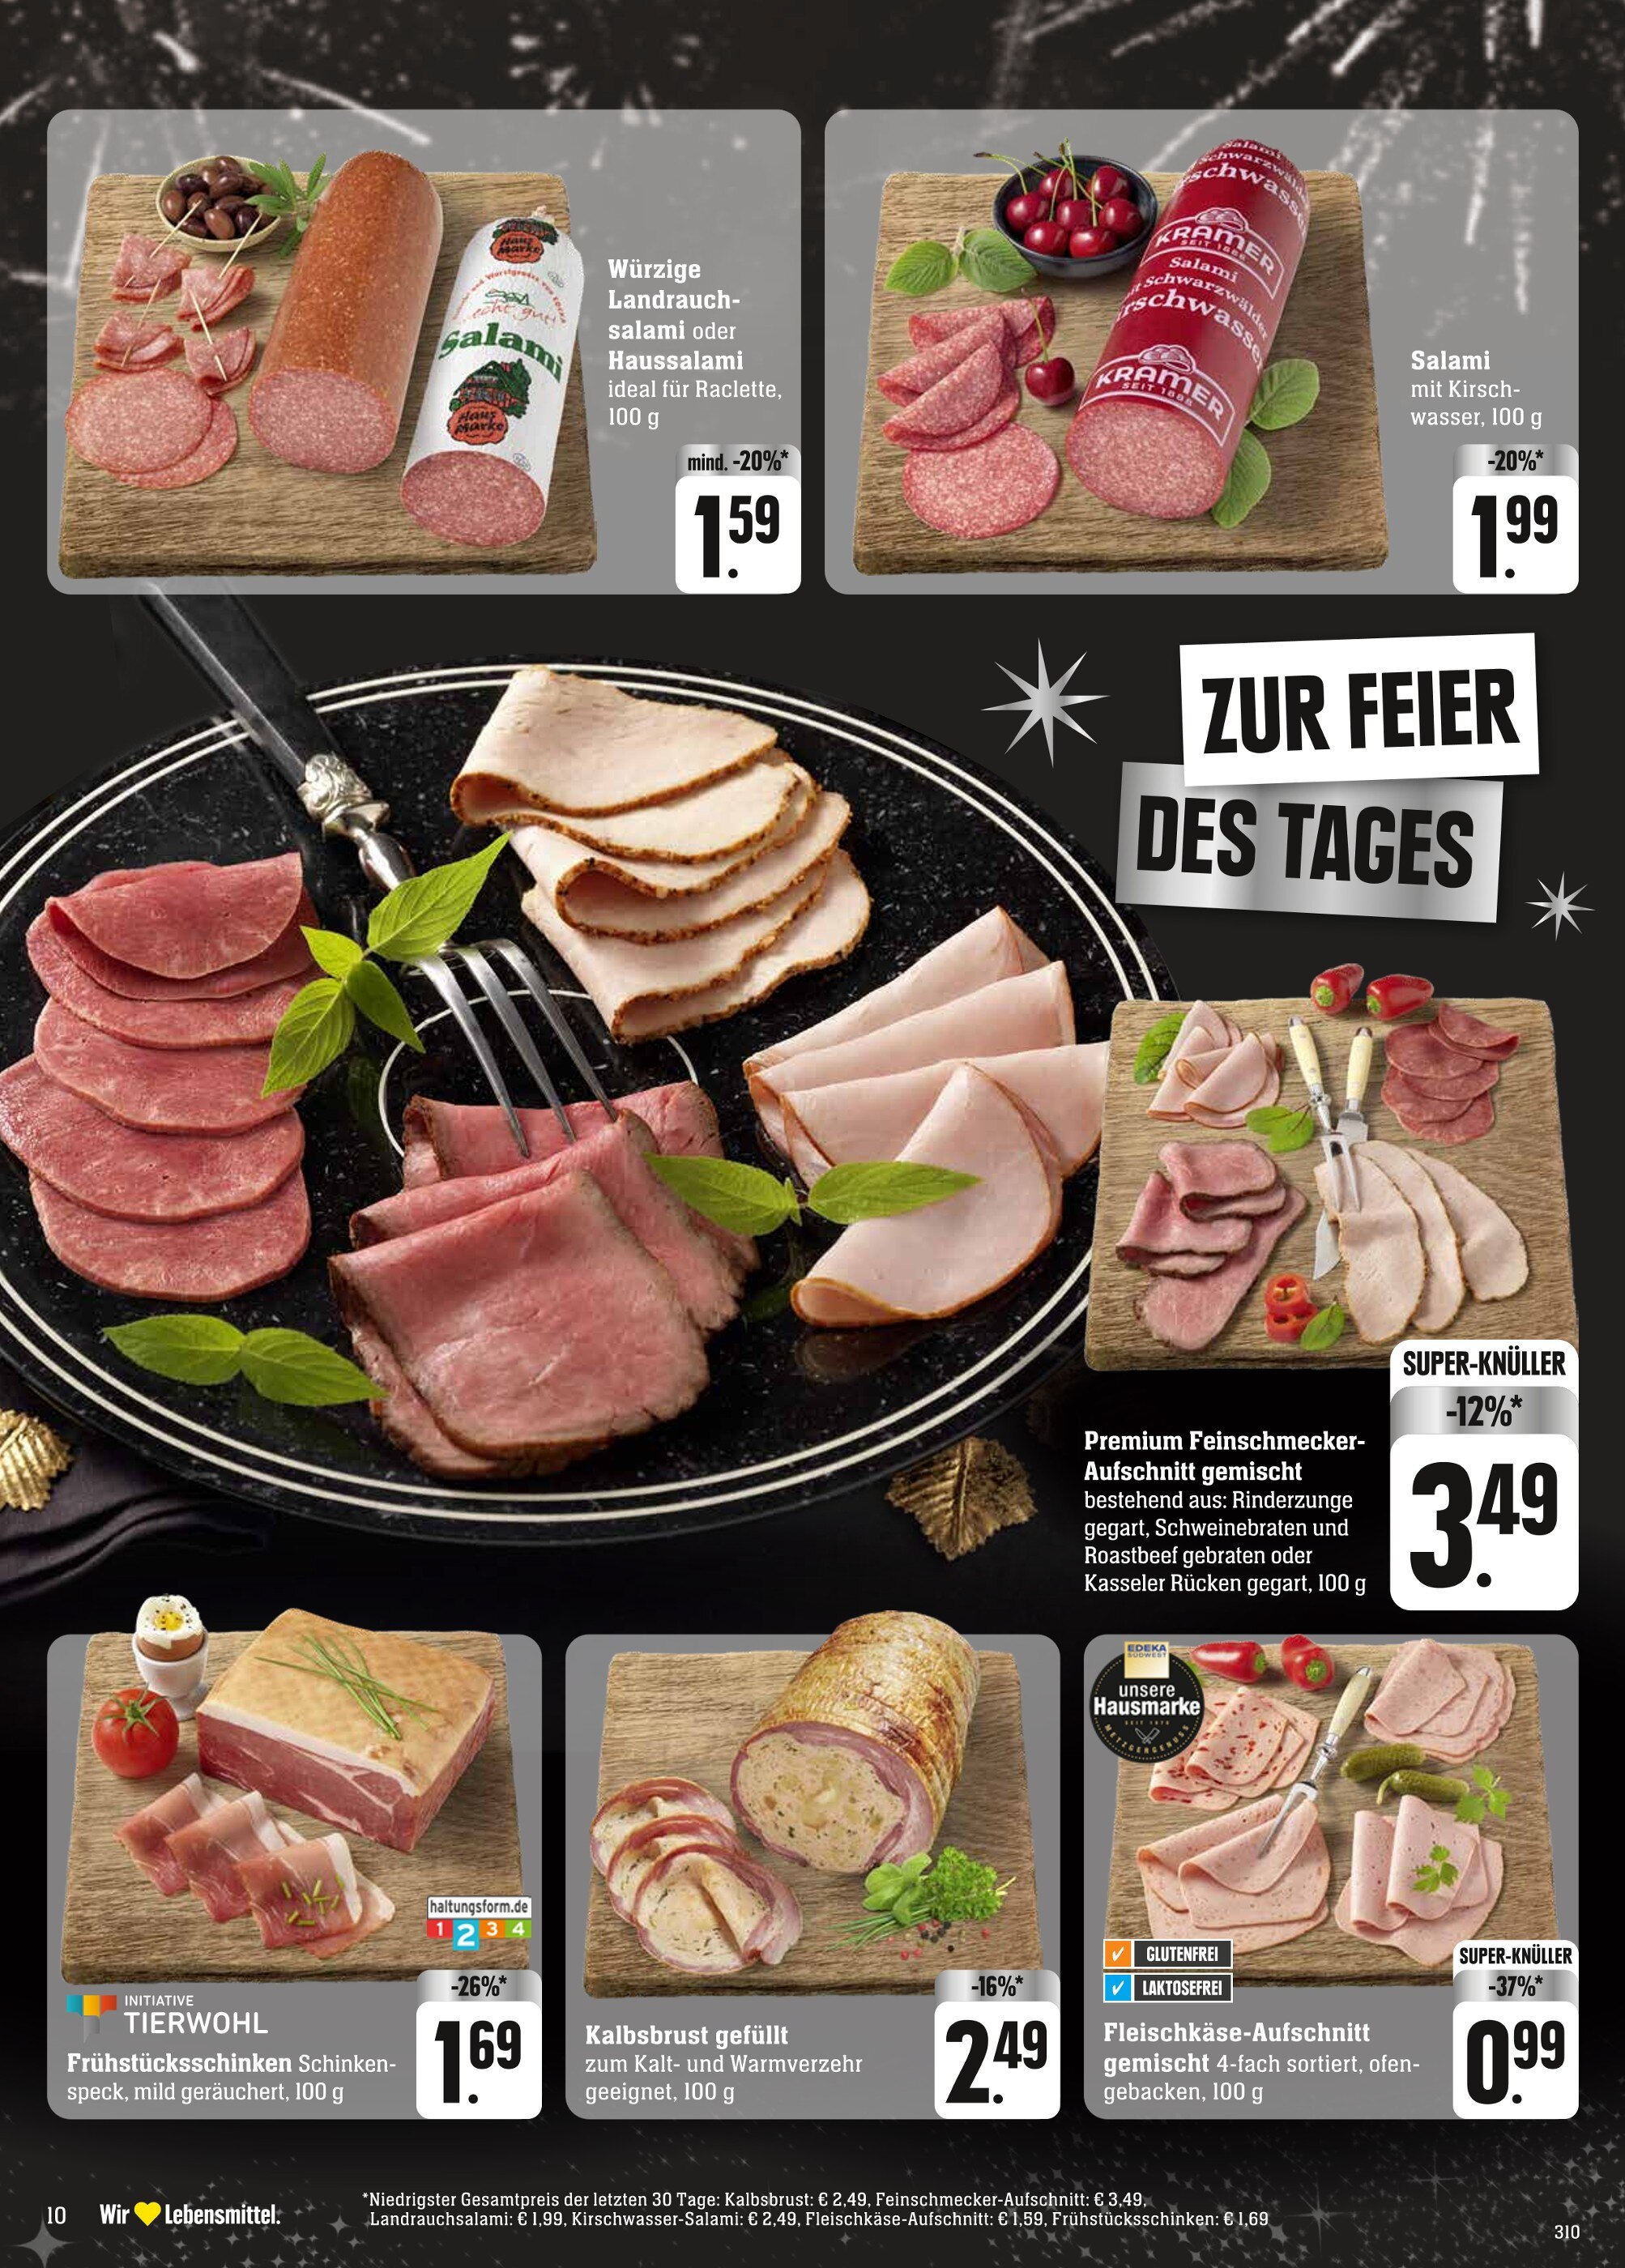 Schweinebraten Angebote in Karlsruhe jetzt kaufen! 🔥 günstig 